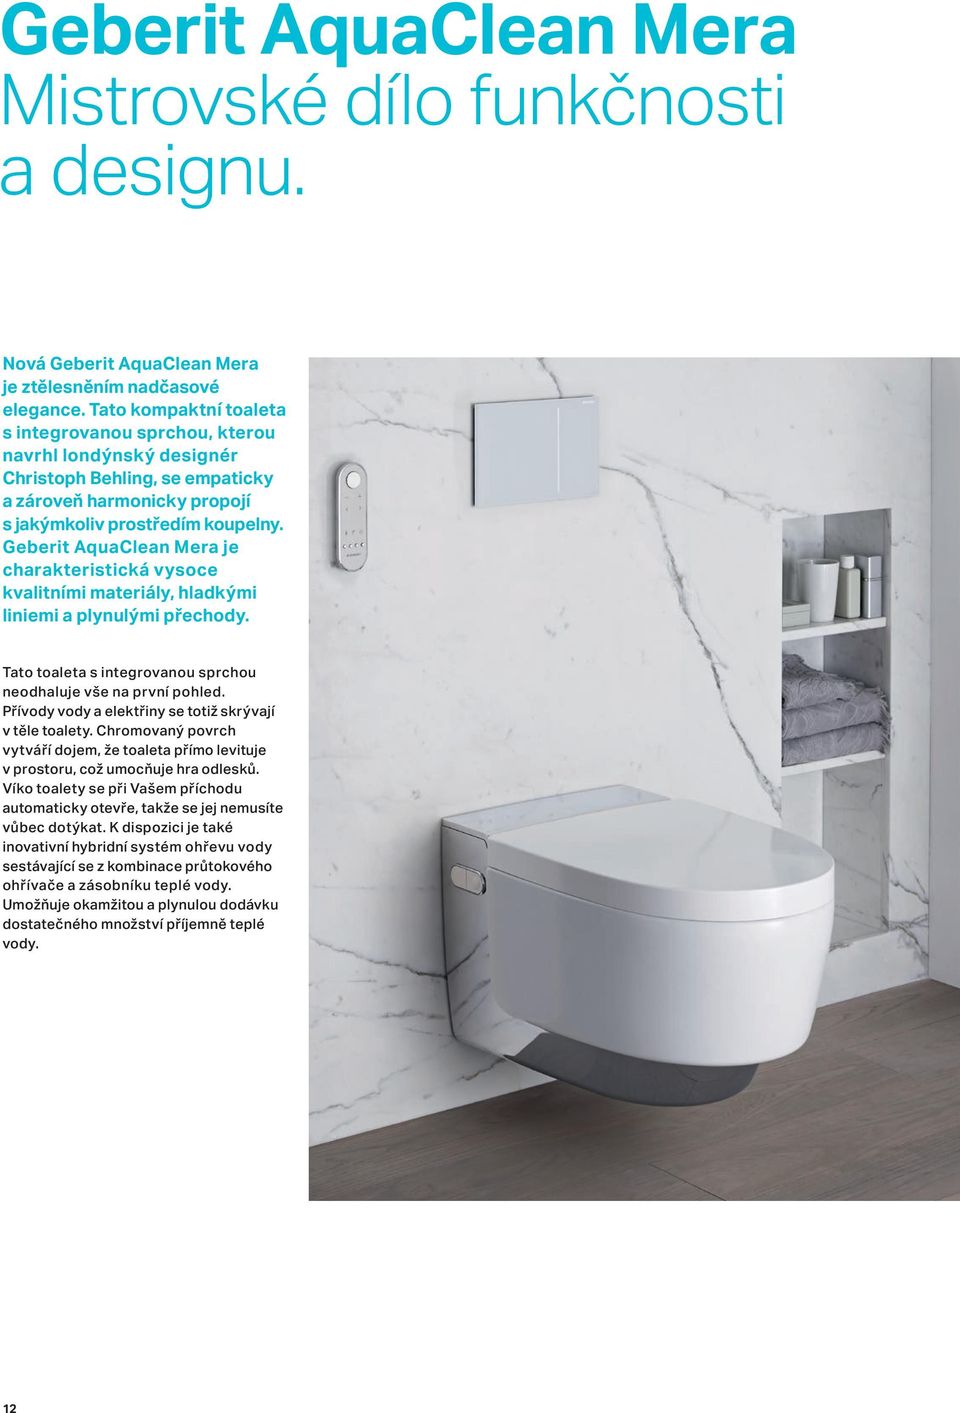 Geberit AquaClean Mera je charakteristická vysoce kvalitními materiály, hladkými liniemi a plynulými přechody. Tato toaleta s integrovanou sprchou neodhaluje vše na první pohled.